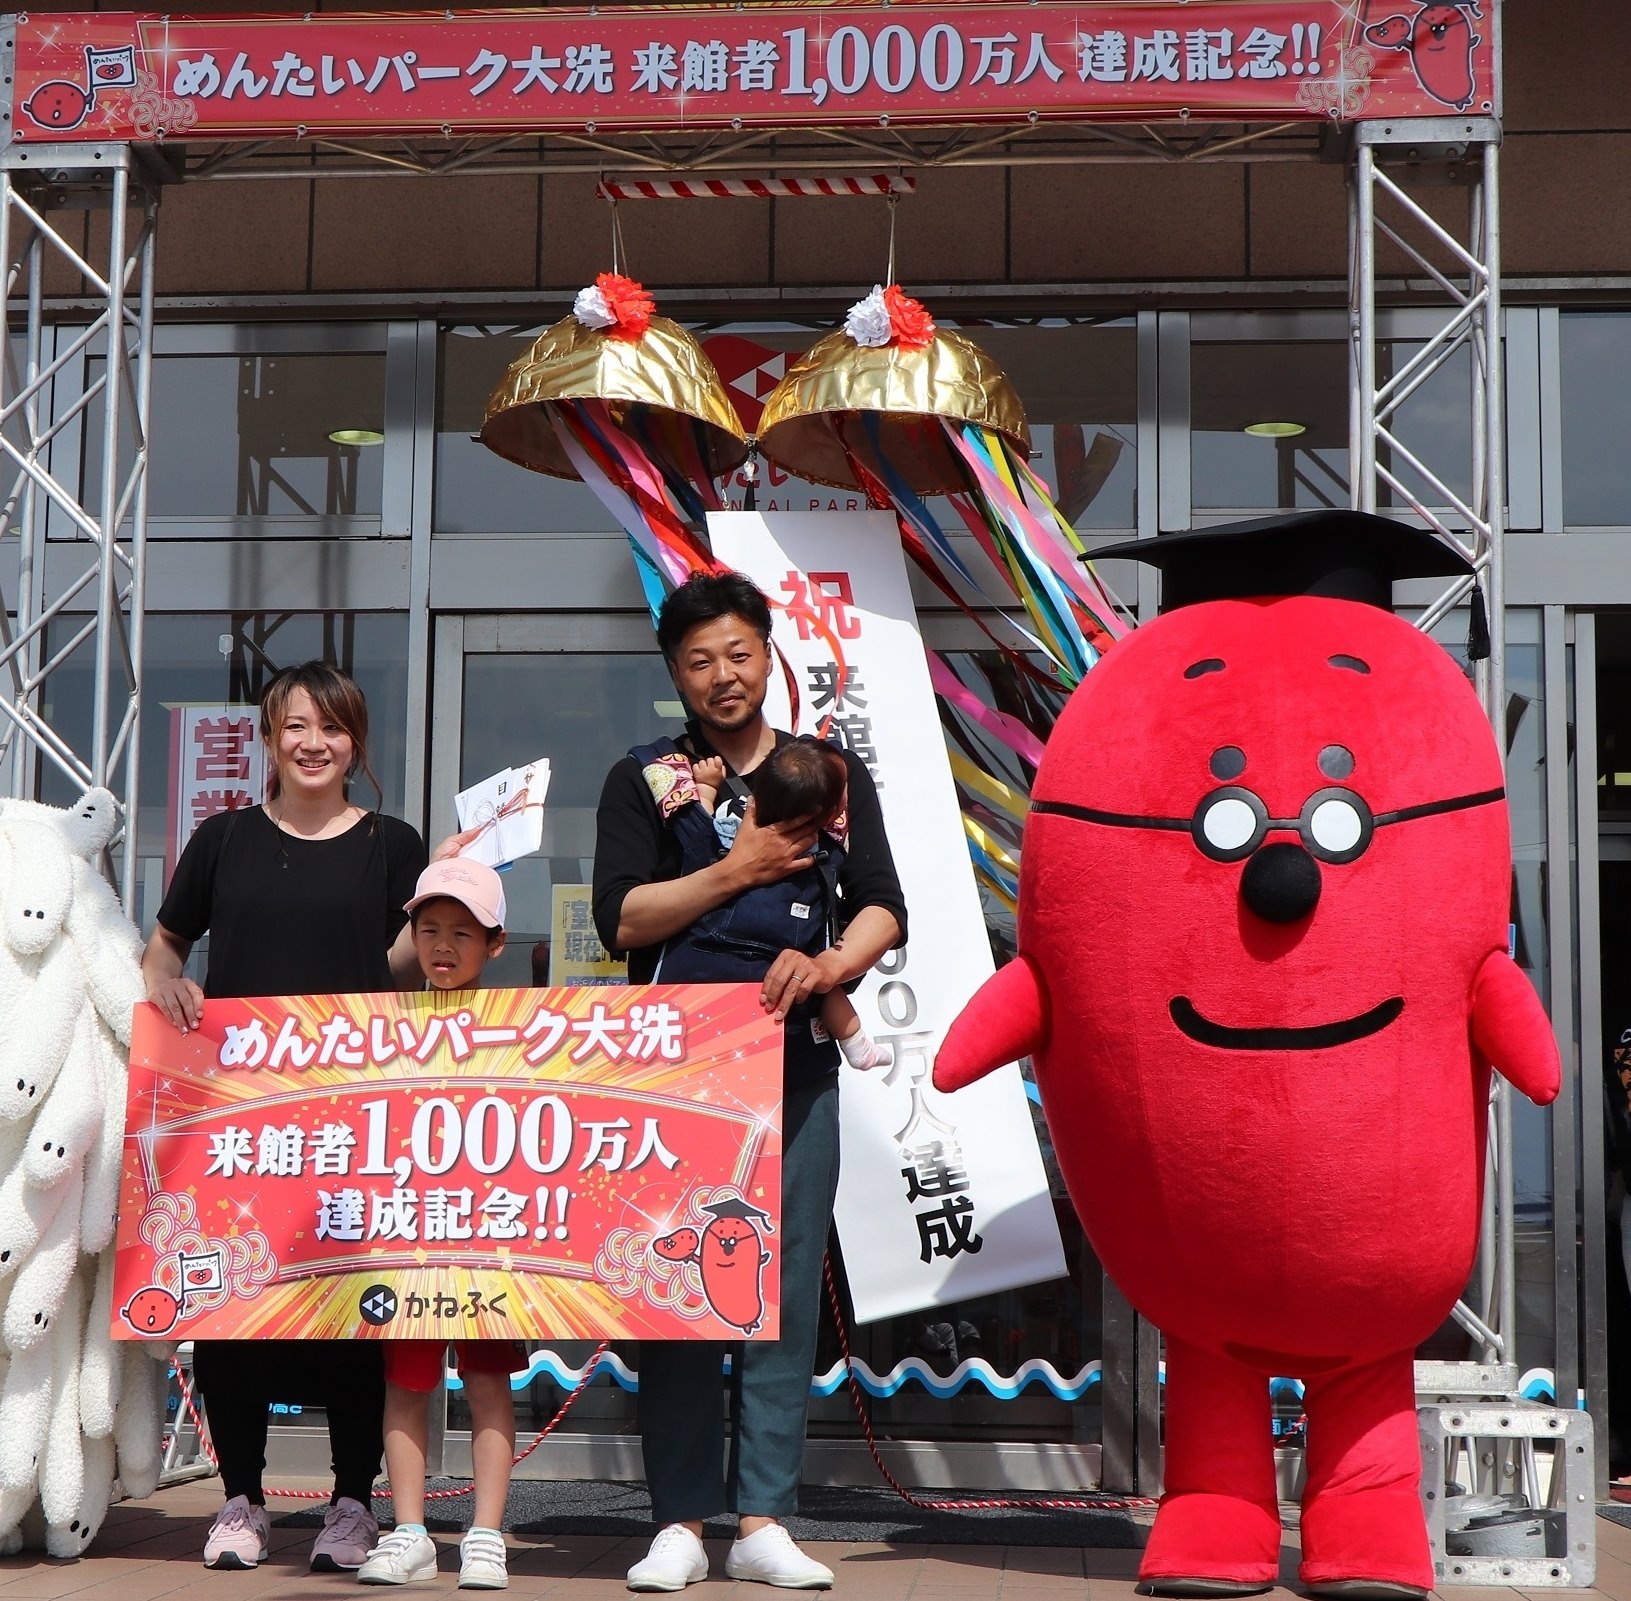 ららぽーと磐田の10周年アニバーサリー　
イベントやフェア、プレゼントキャンペーンなど
盛りだくさんの「10周年祭」を開催